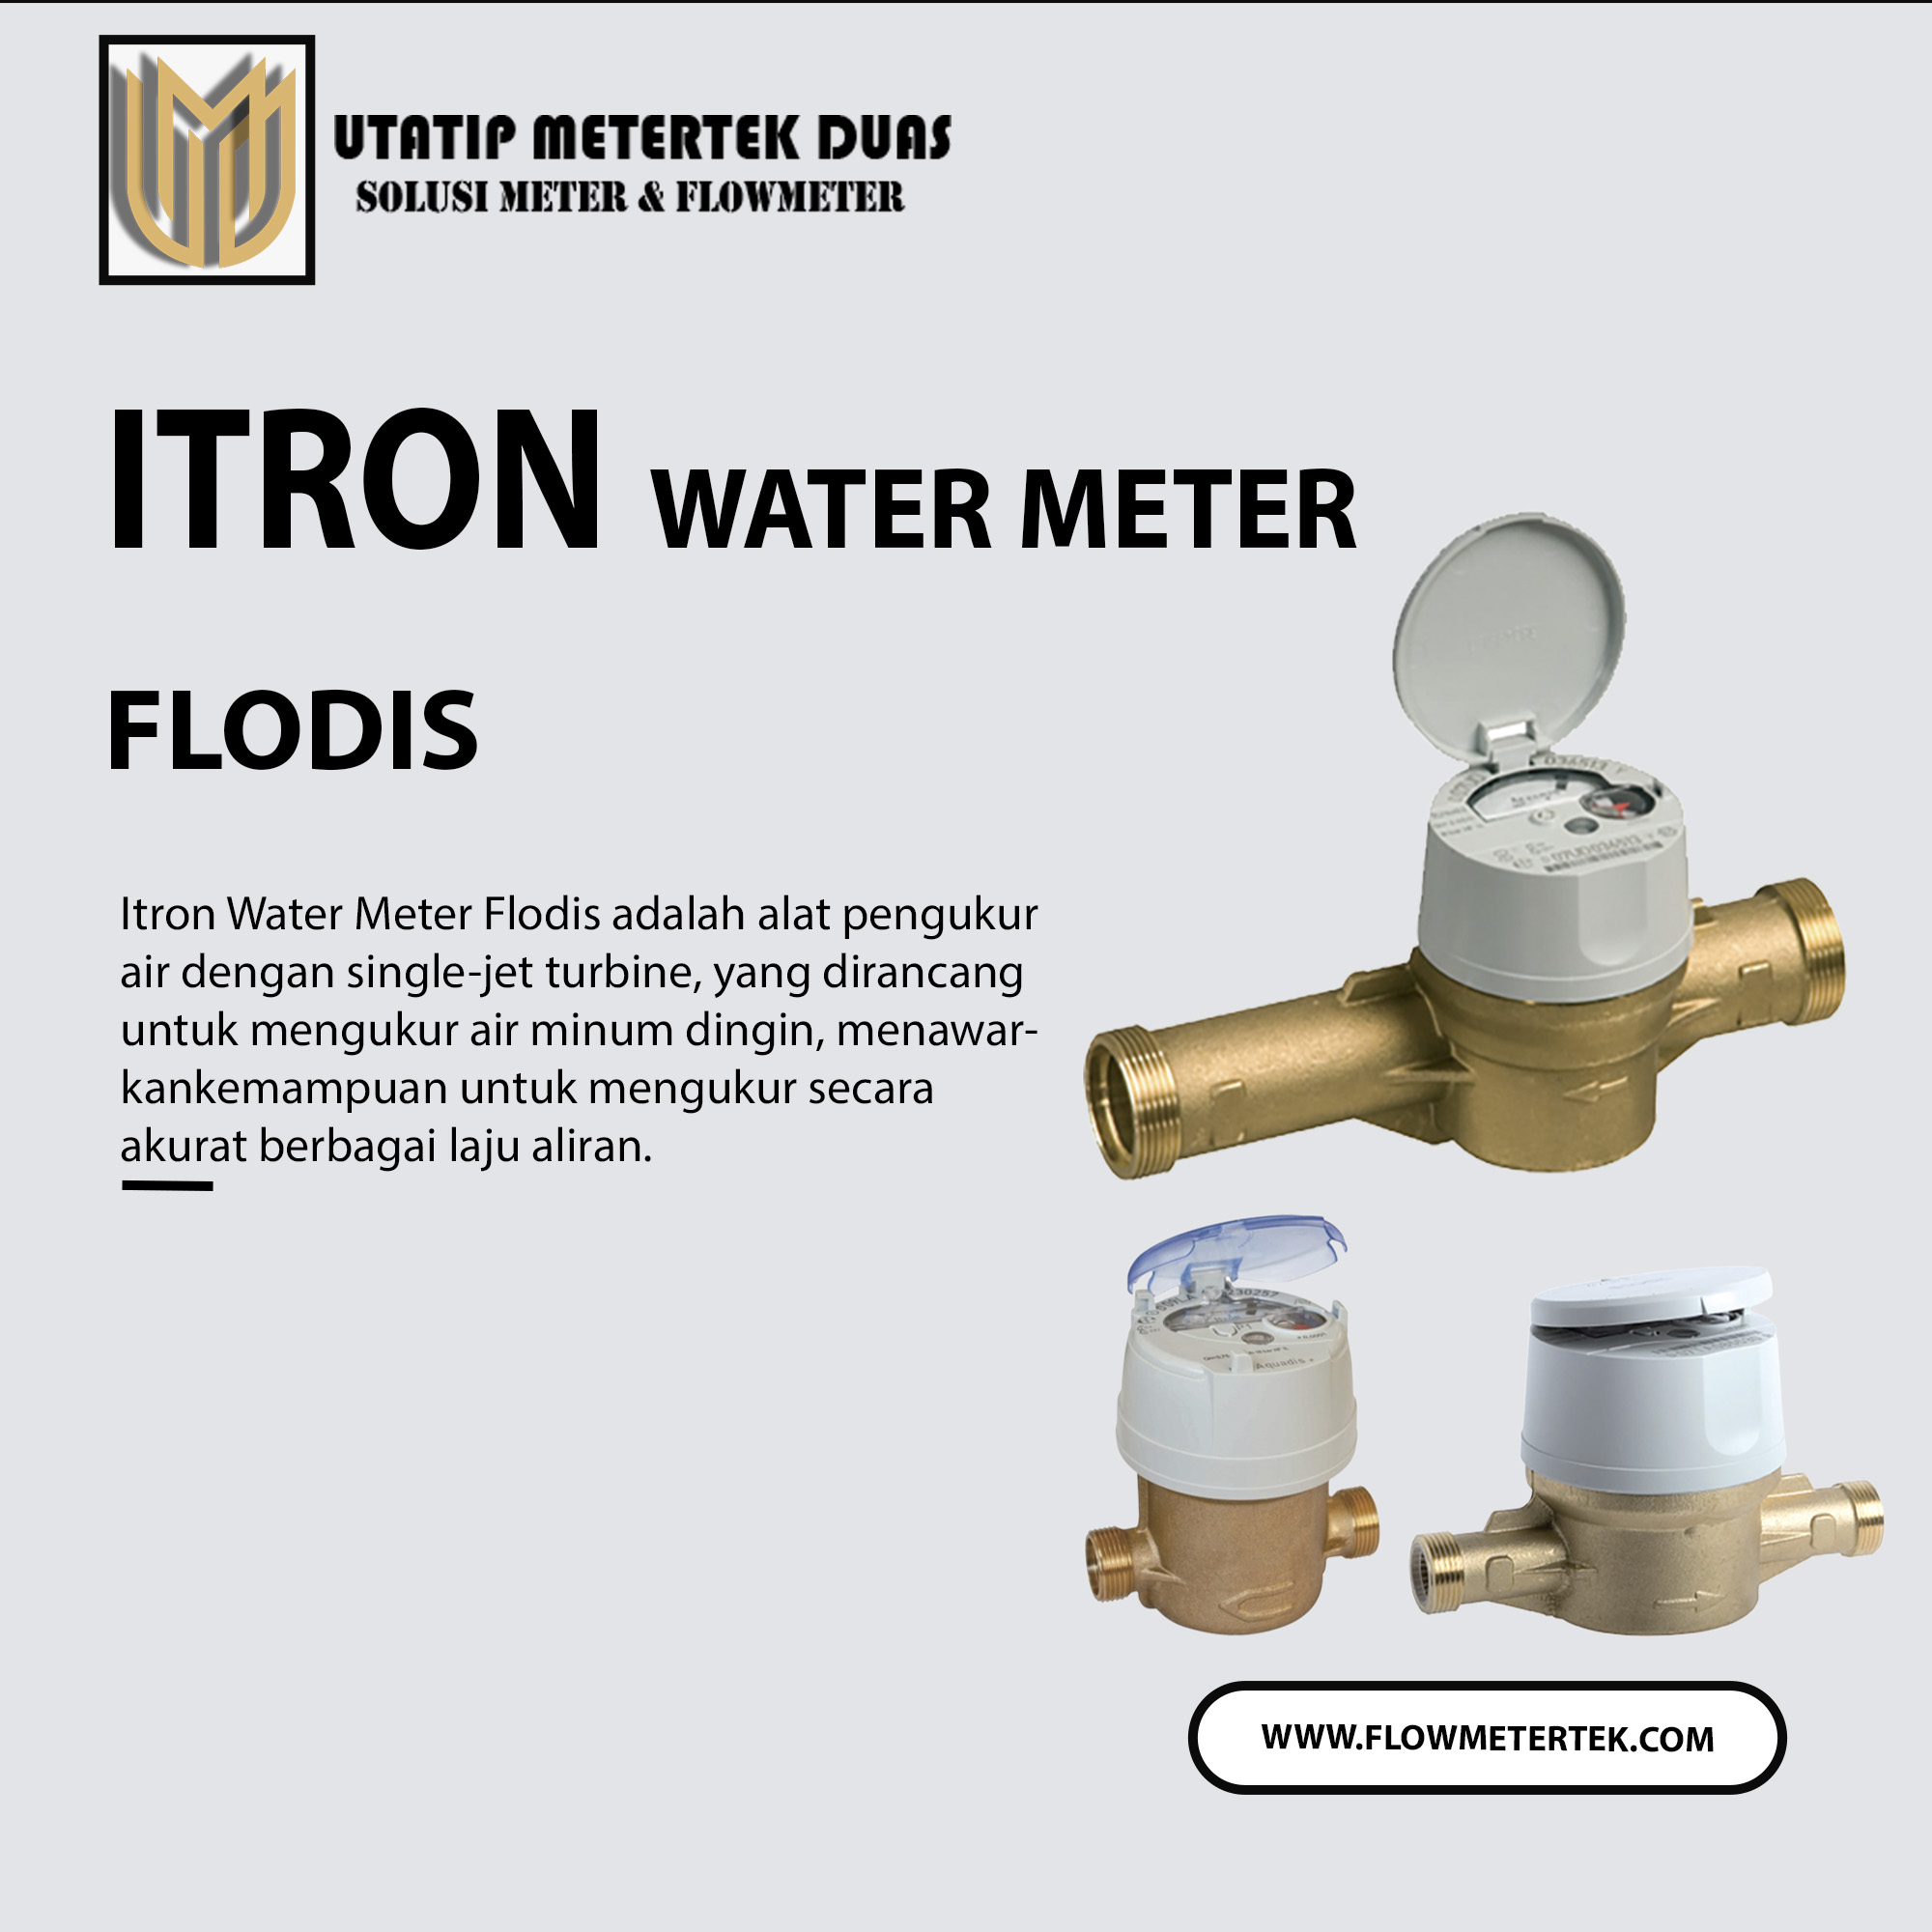 Itron Water Meter Flodis